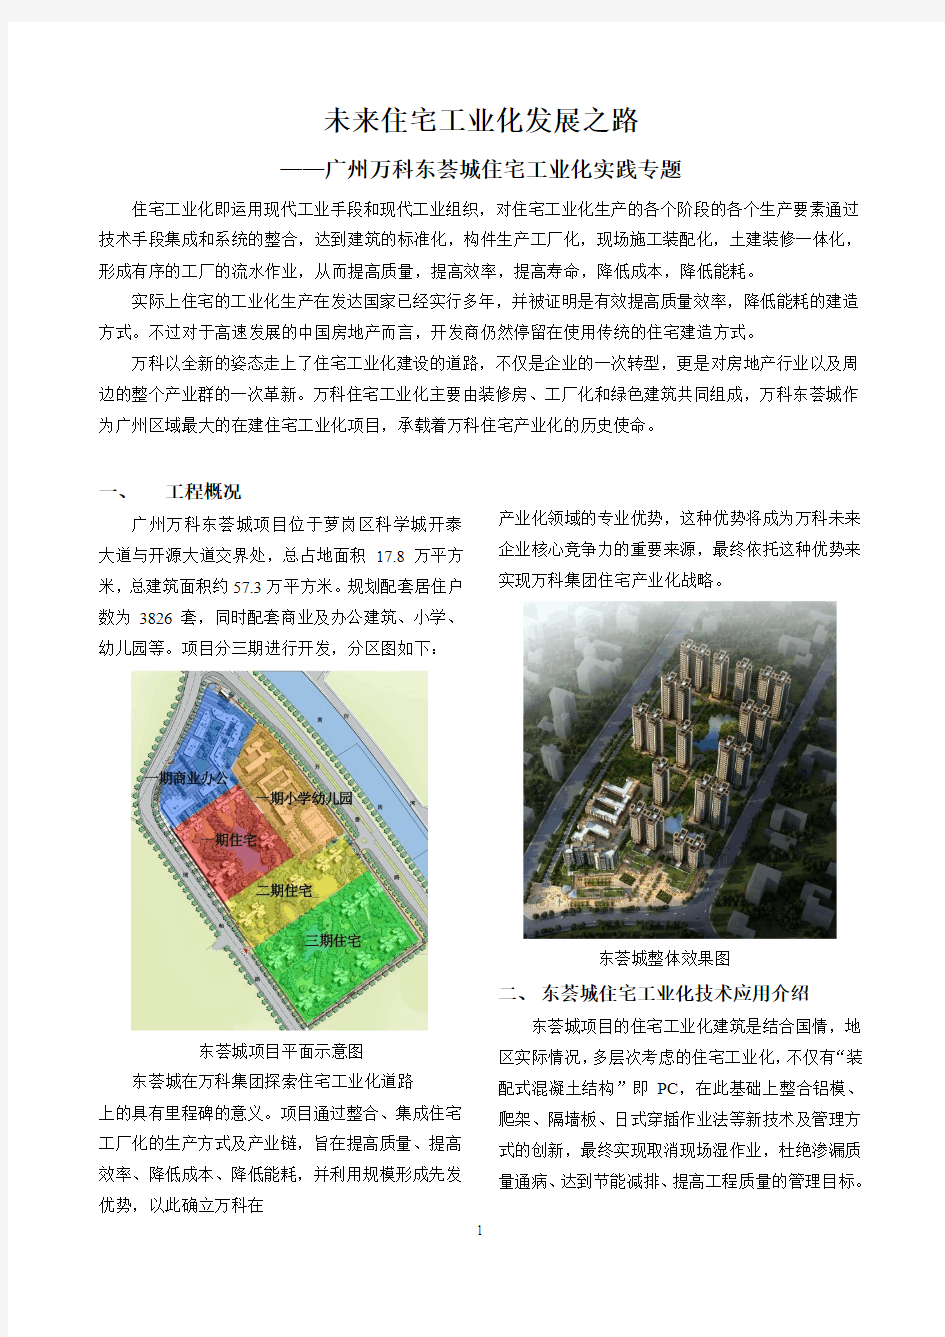 广州东荟城住宅施工工业化探索9.5